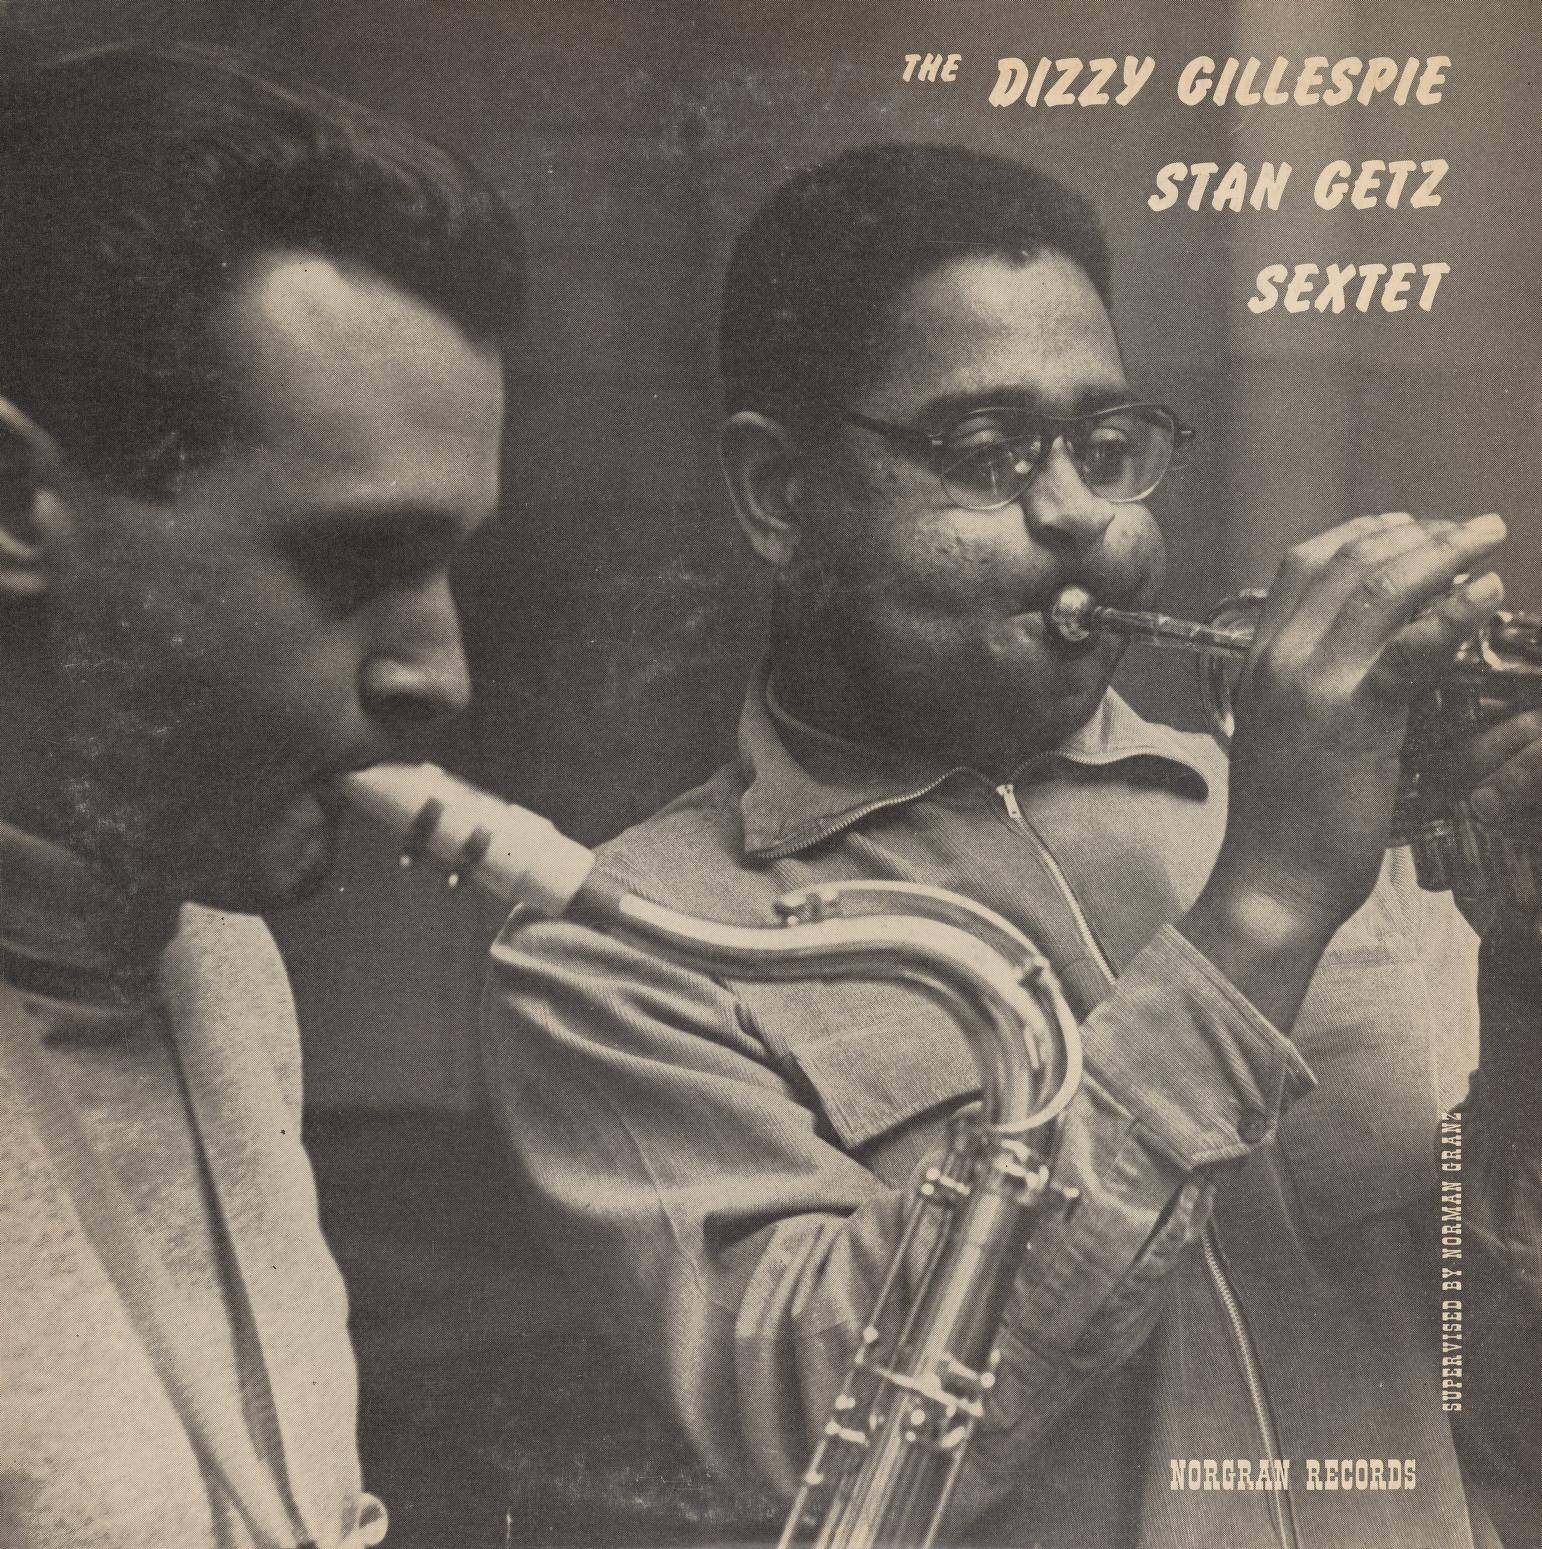 Den Dizzy Gillespie Stan Getz Sextet Album Cover Wallpaper Wallpaper